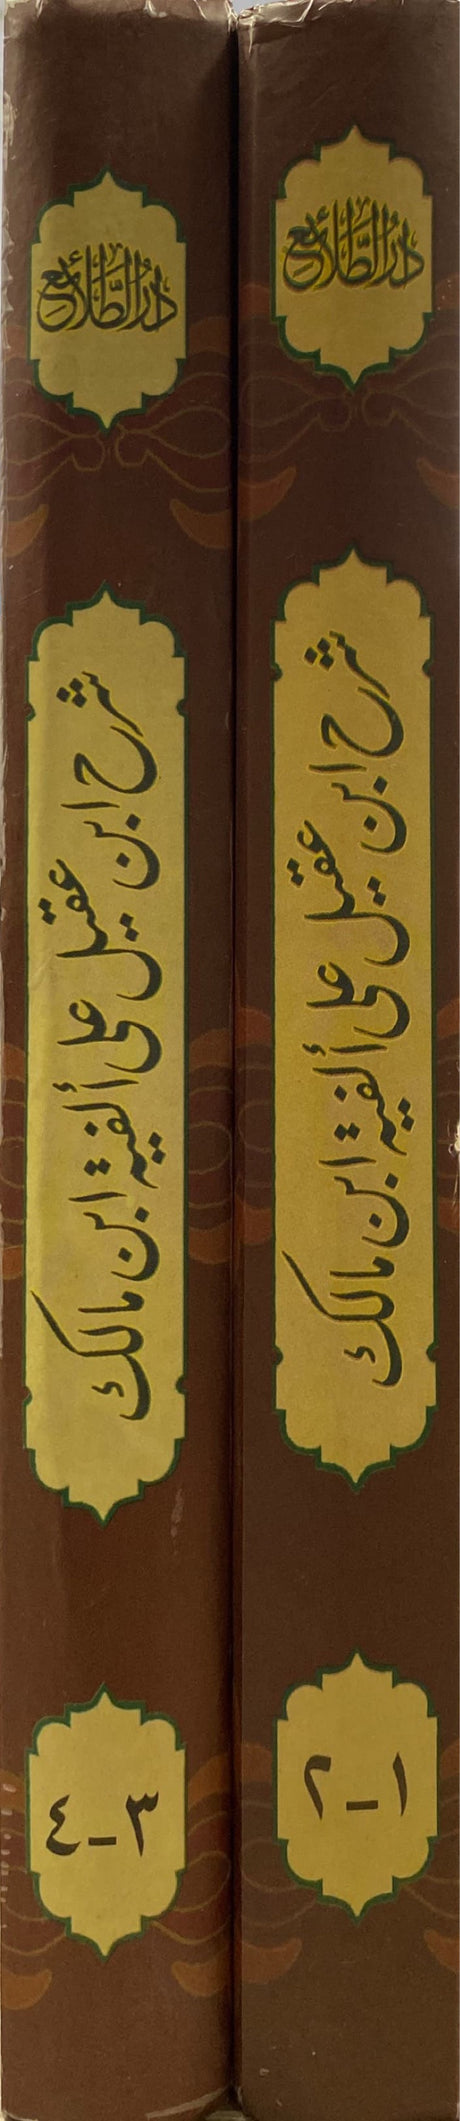 شرح ابن عقيل على الفية ابن مالك     Sharh Ibn Aqeel (2 Volume Set)